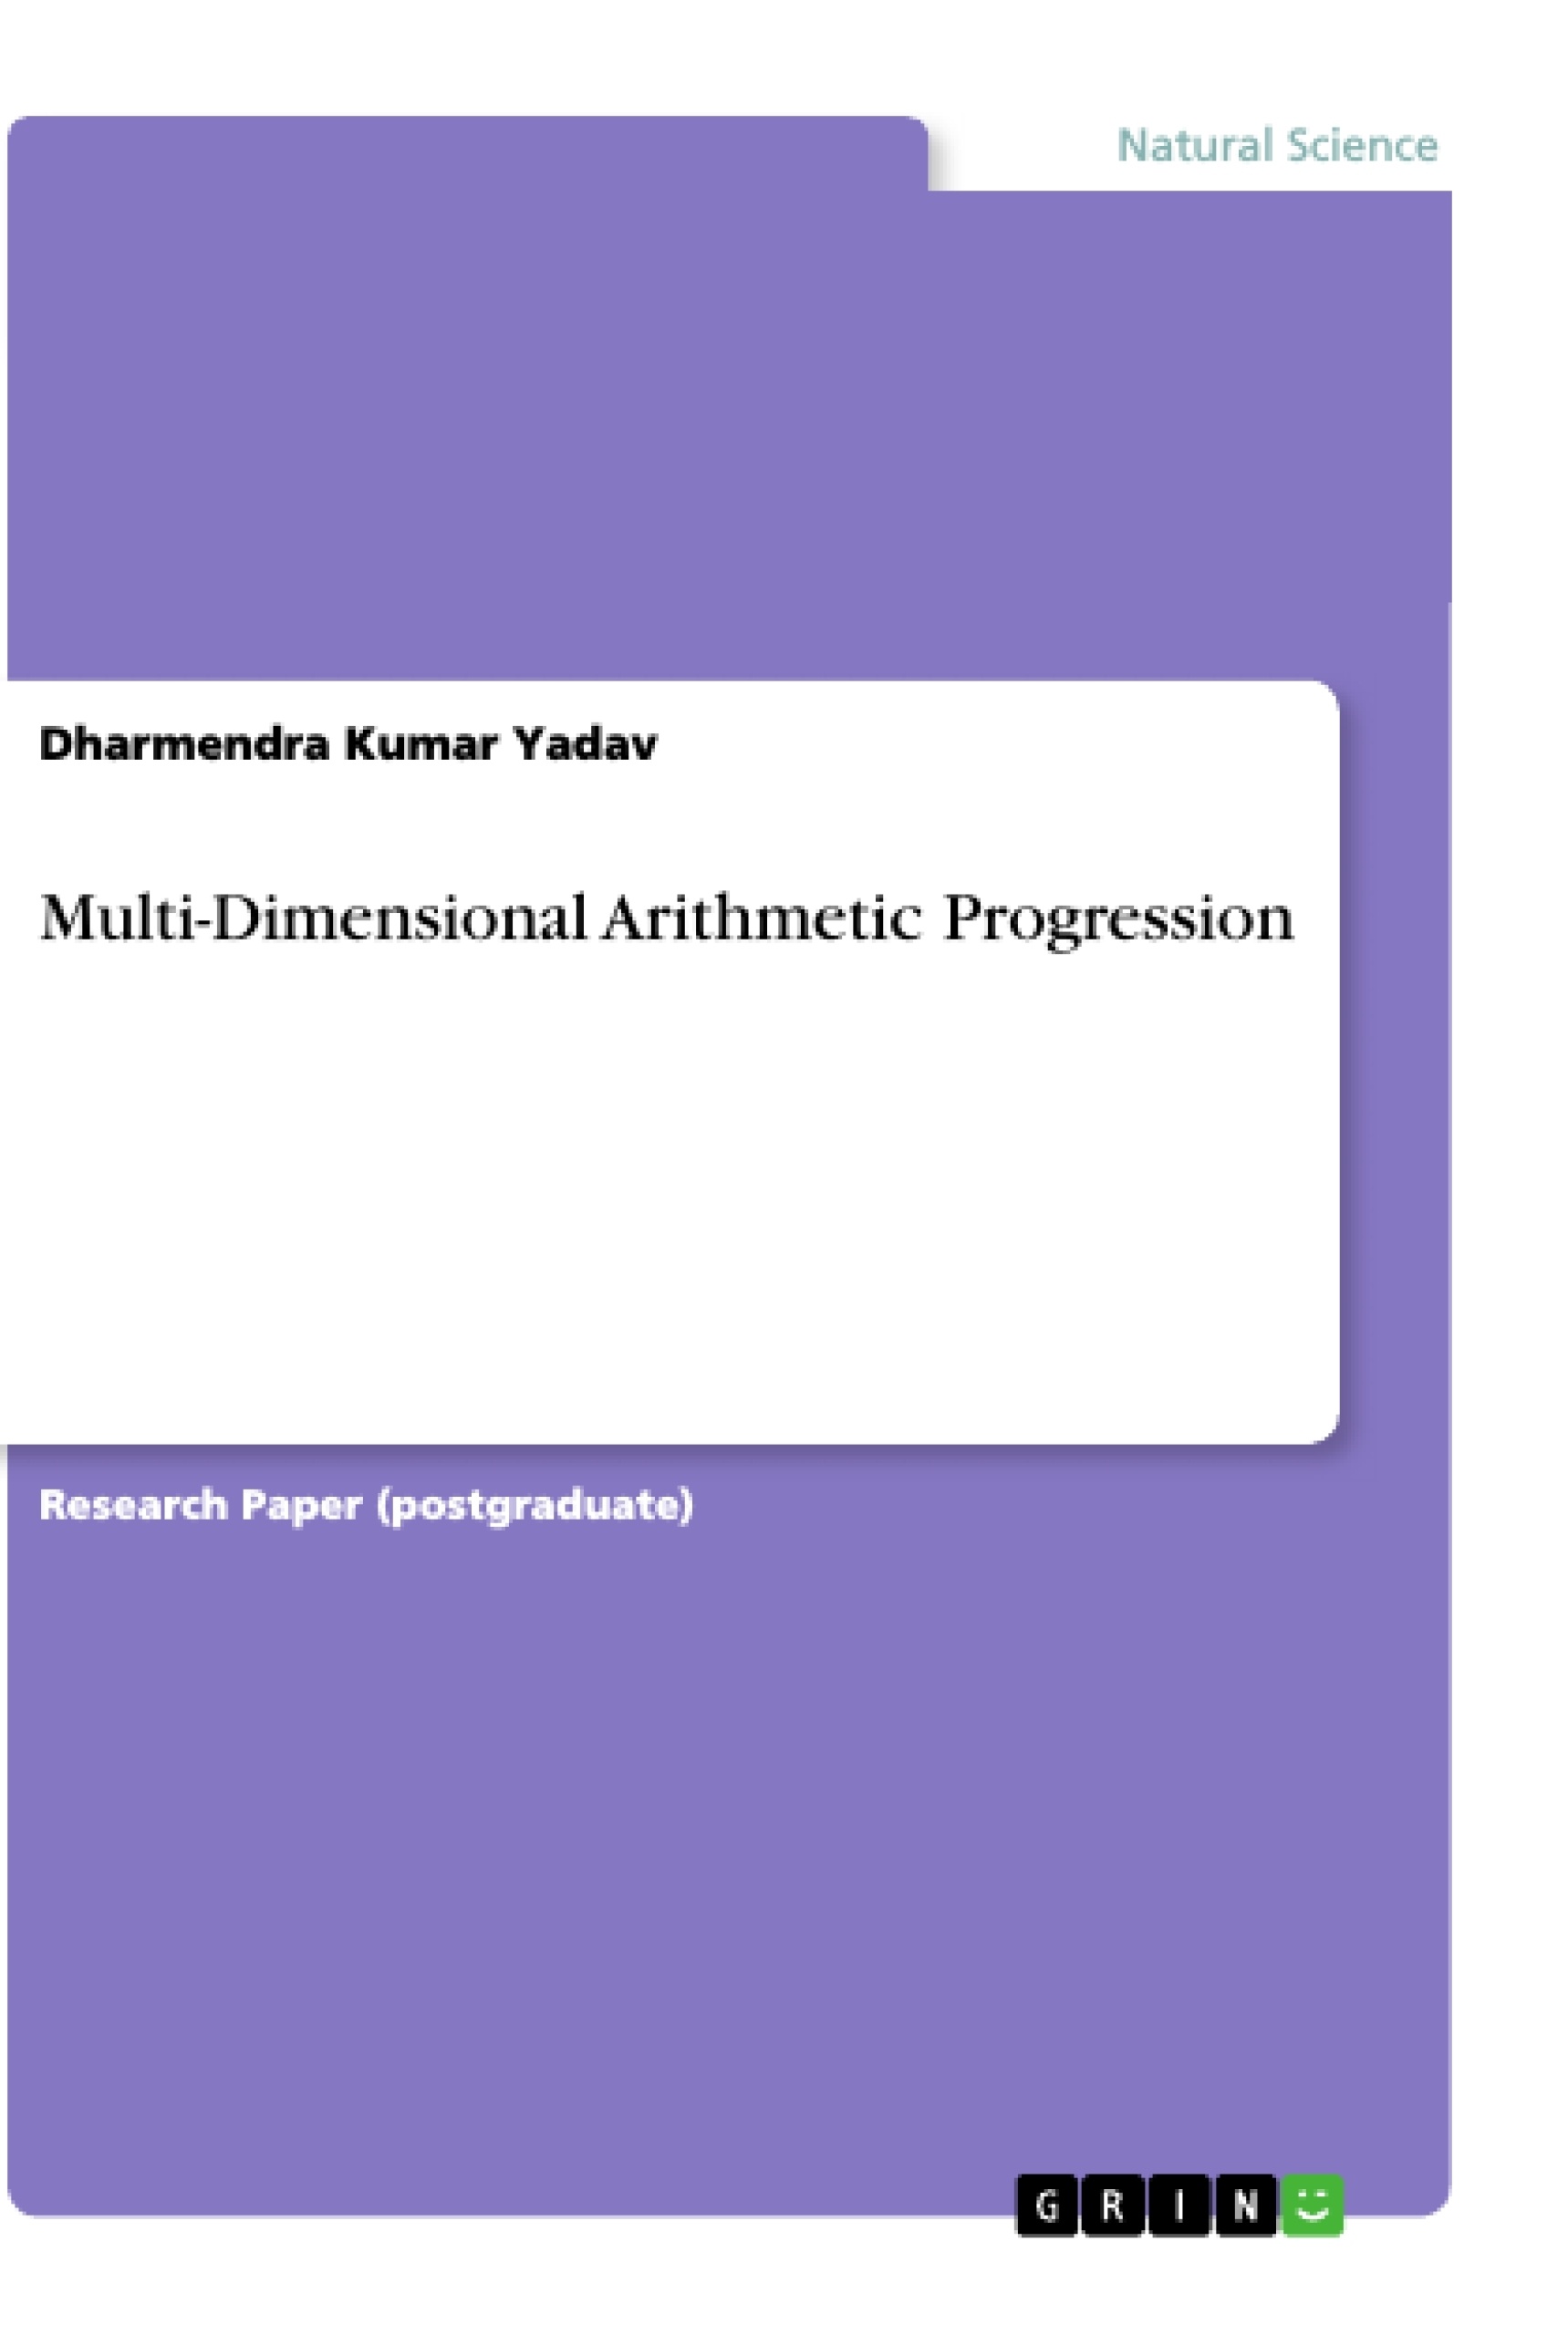 Title: Multi-Dimensional Arithmetic Progression